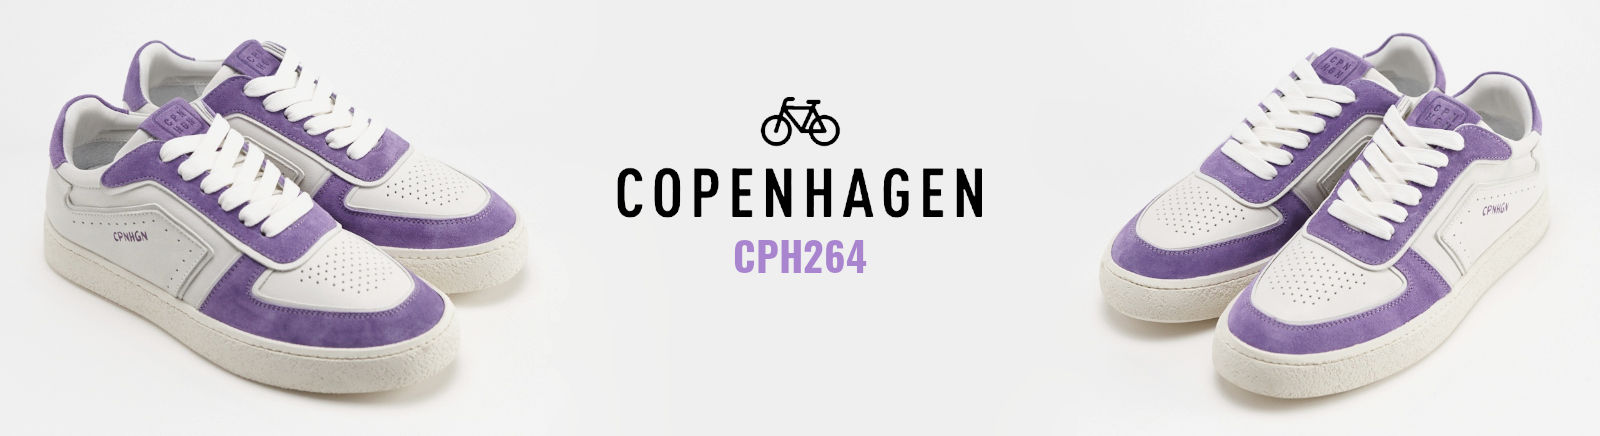 Copenhagen Herren Schuhe &#9658; online bestellen bei Prange